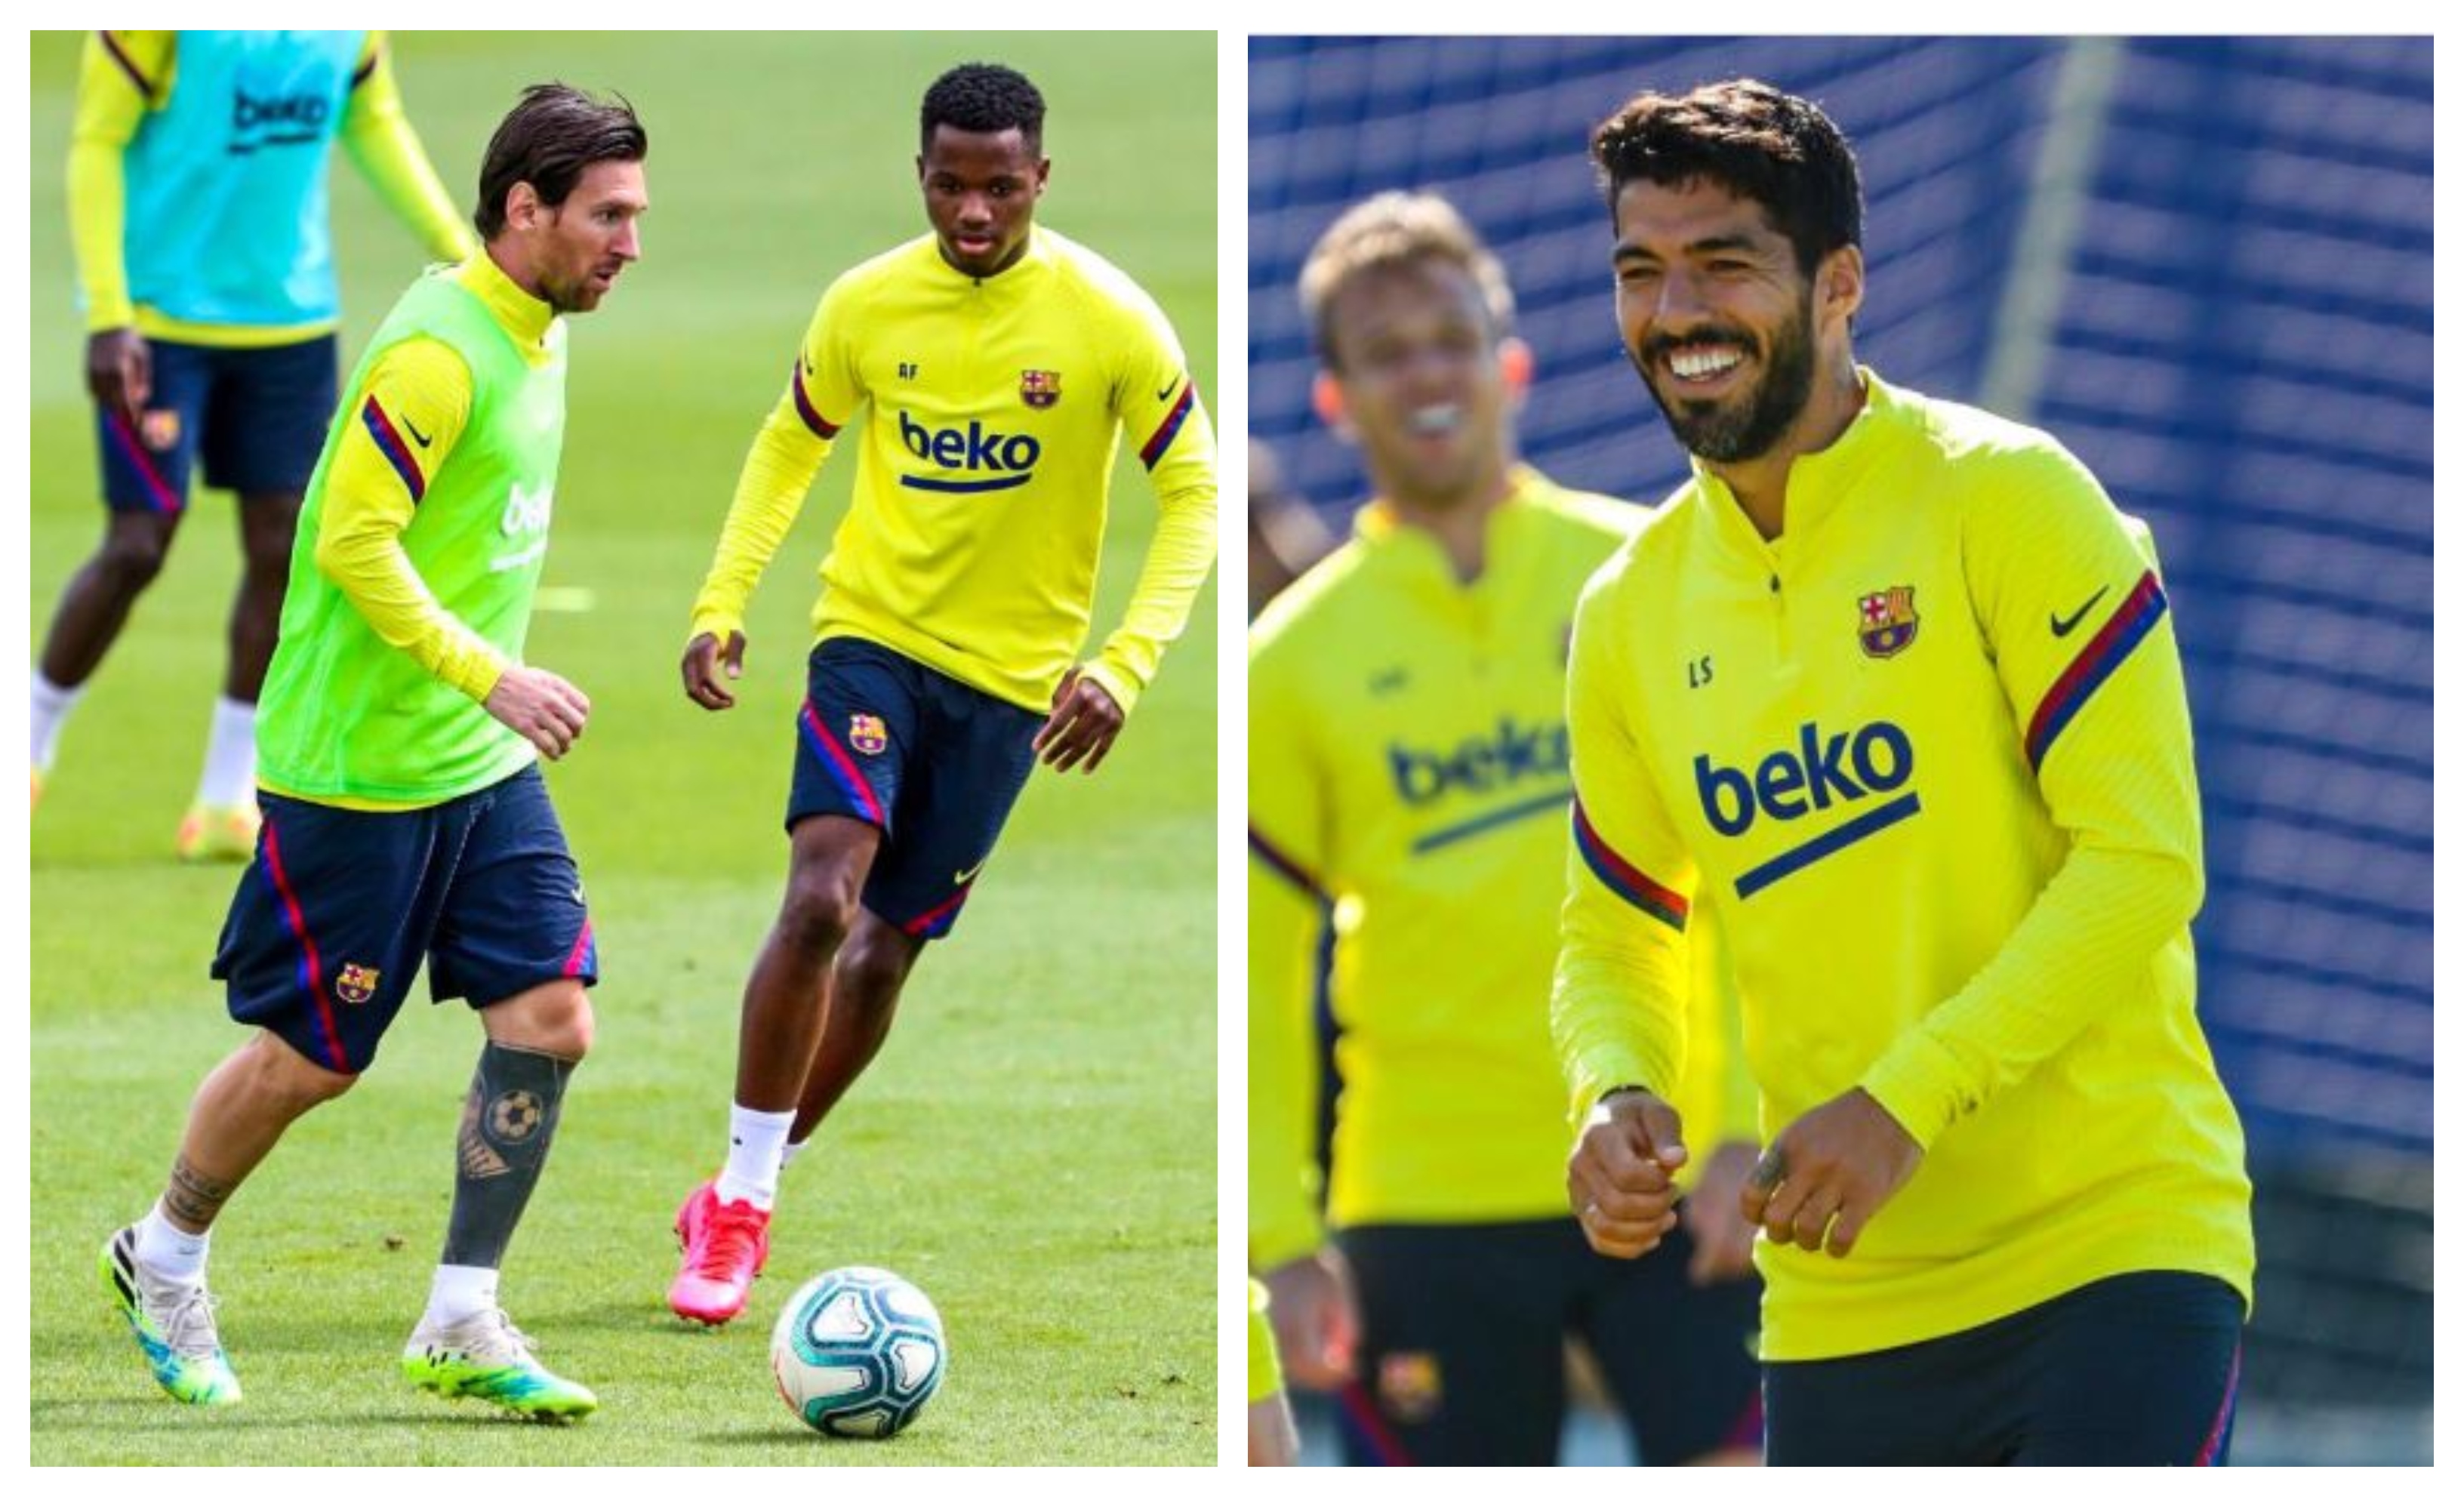 Lionel Messi y Luis Suárez estarán disponibles para jugar en el regreso de la Liga española. (Foto Prensa Libre: Twitter FC Barcelona)